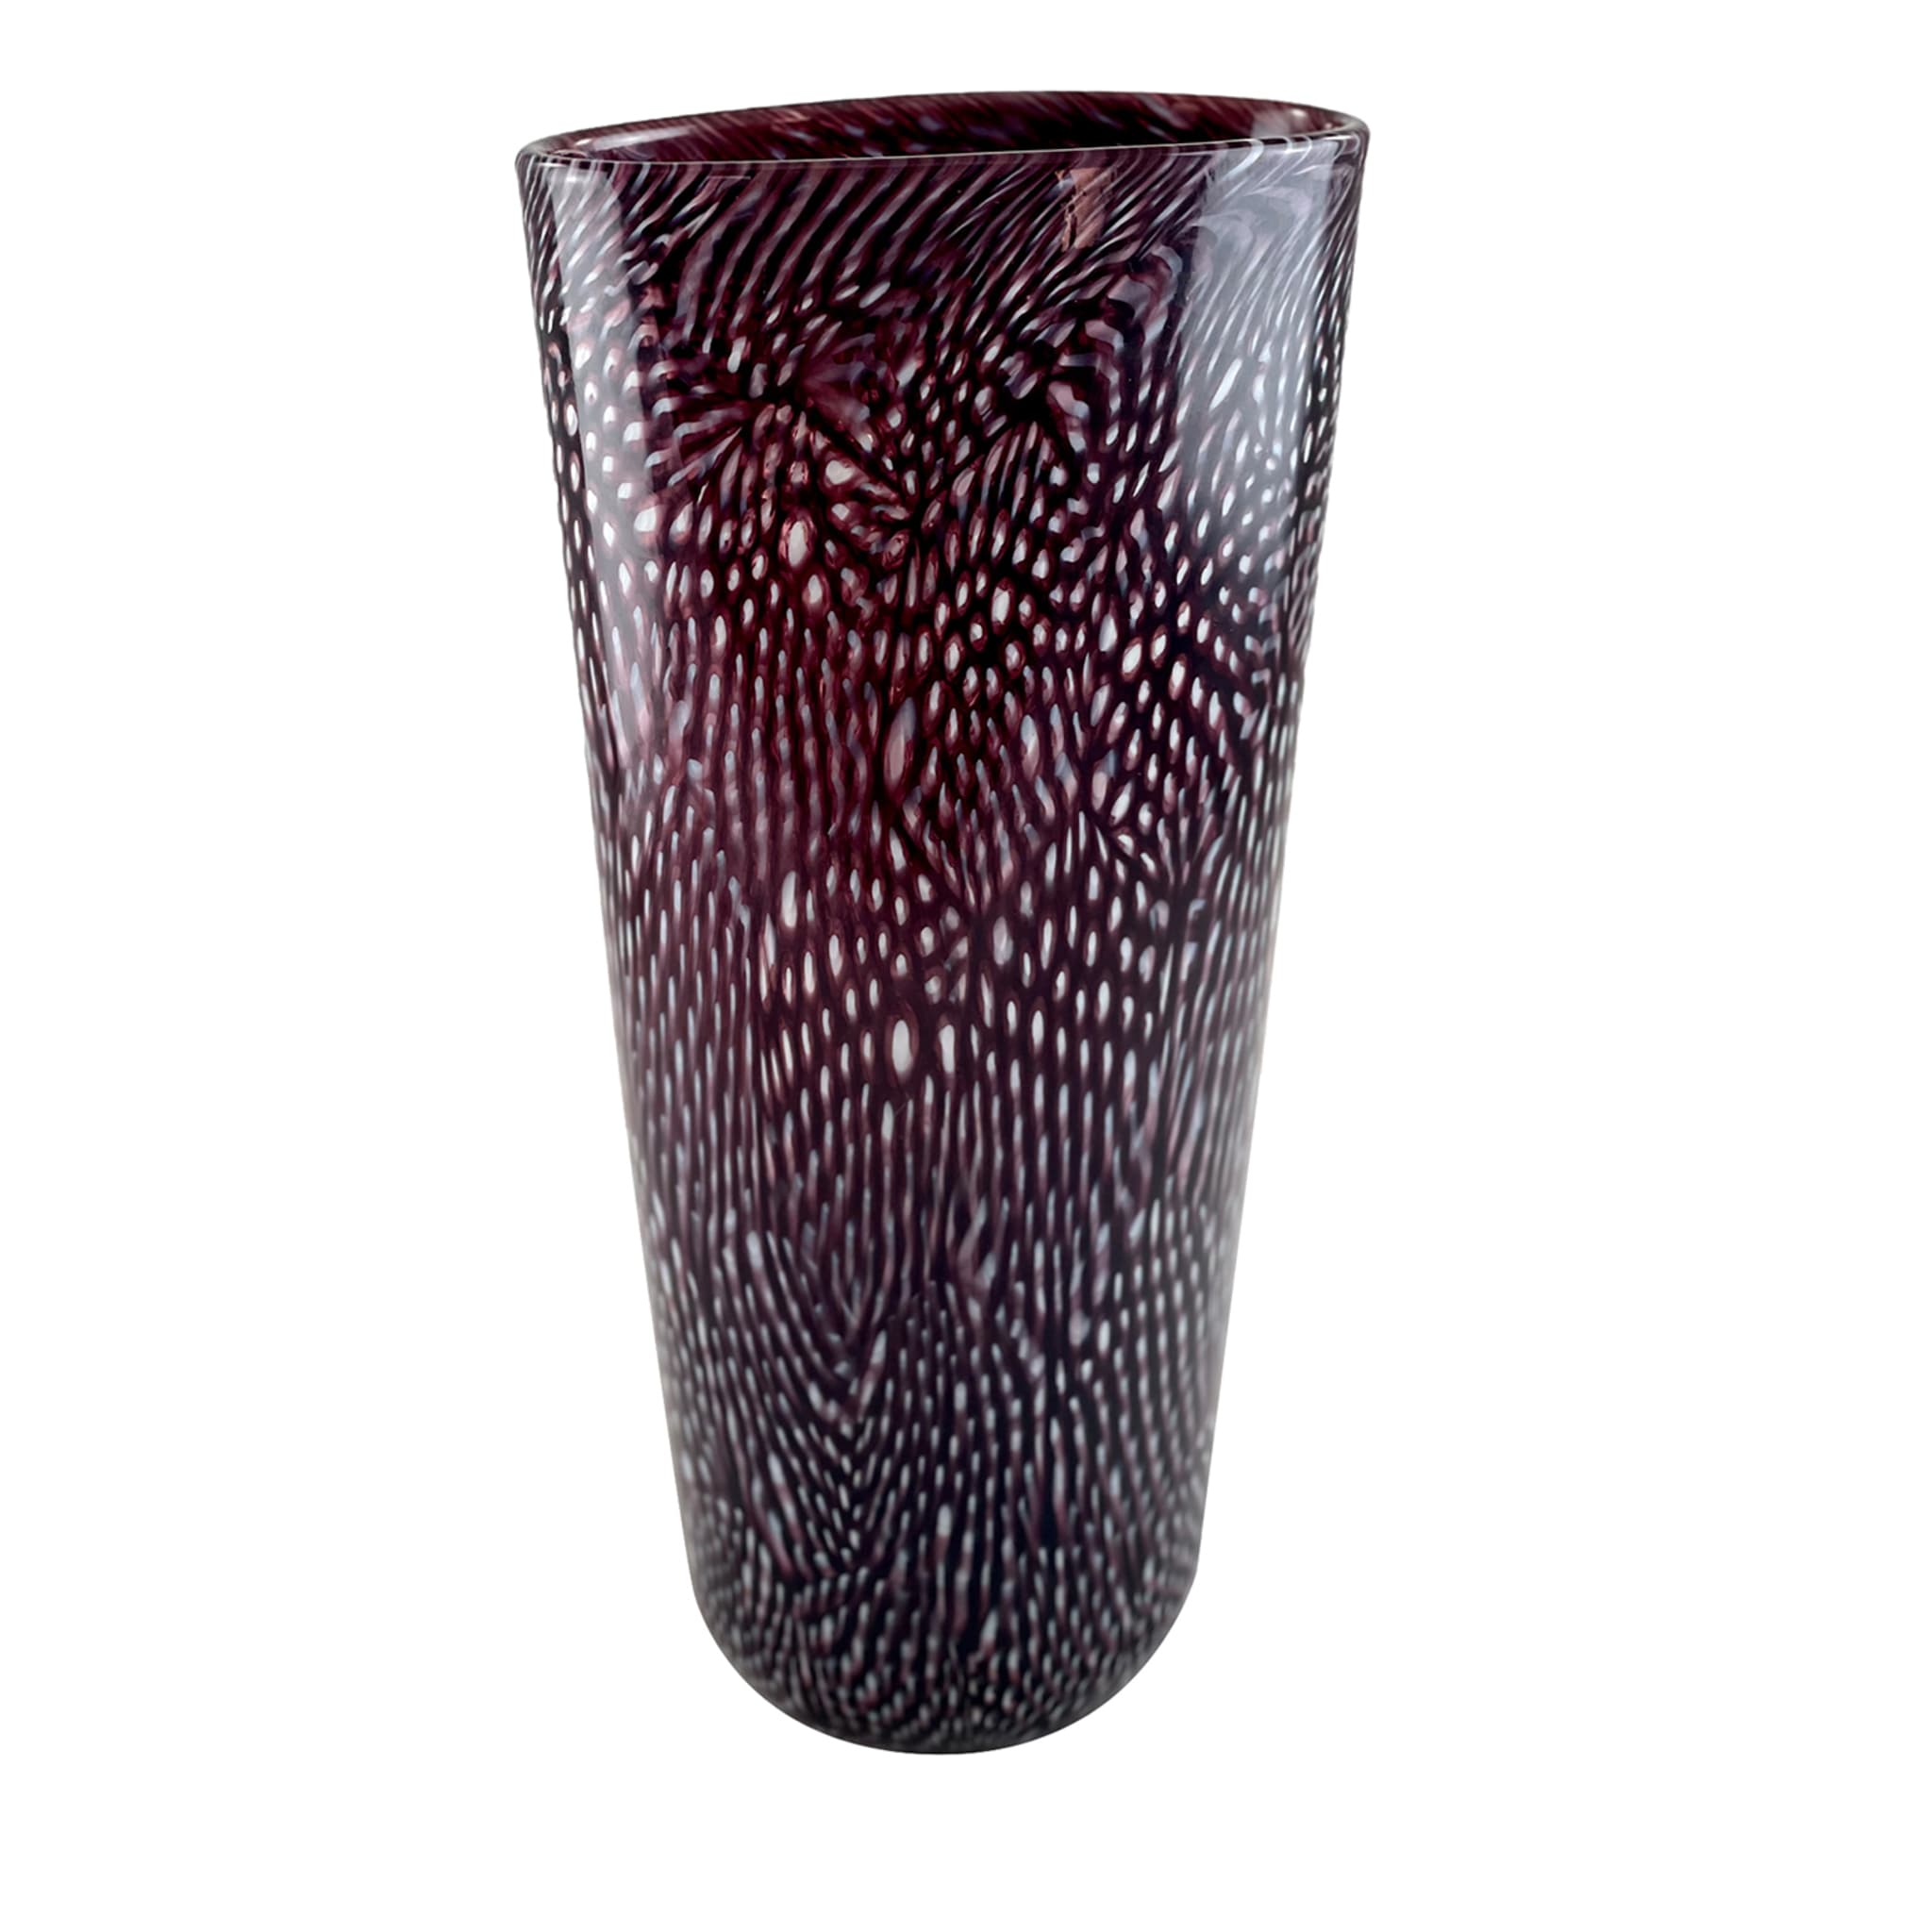 Black & White Filigree Murrine Tall Vase - Main view